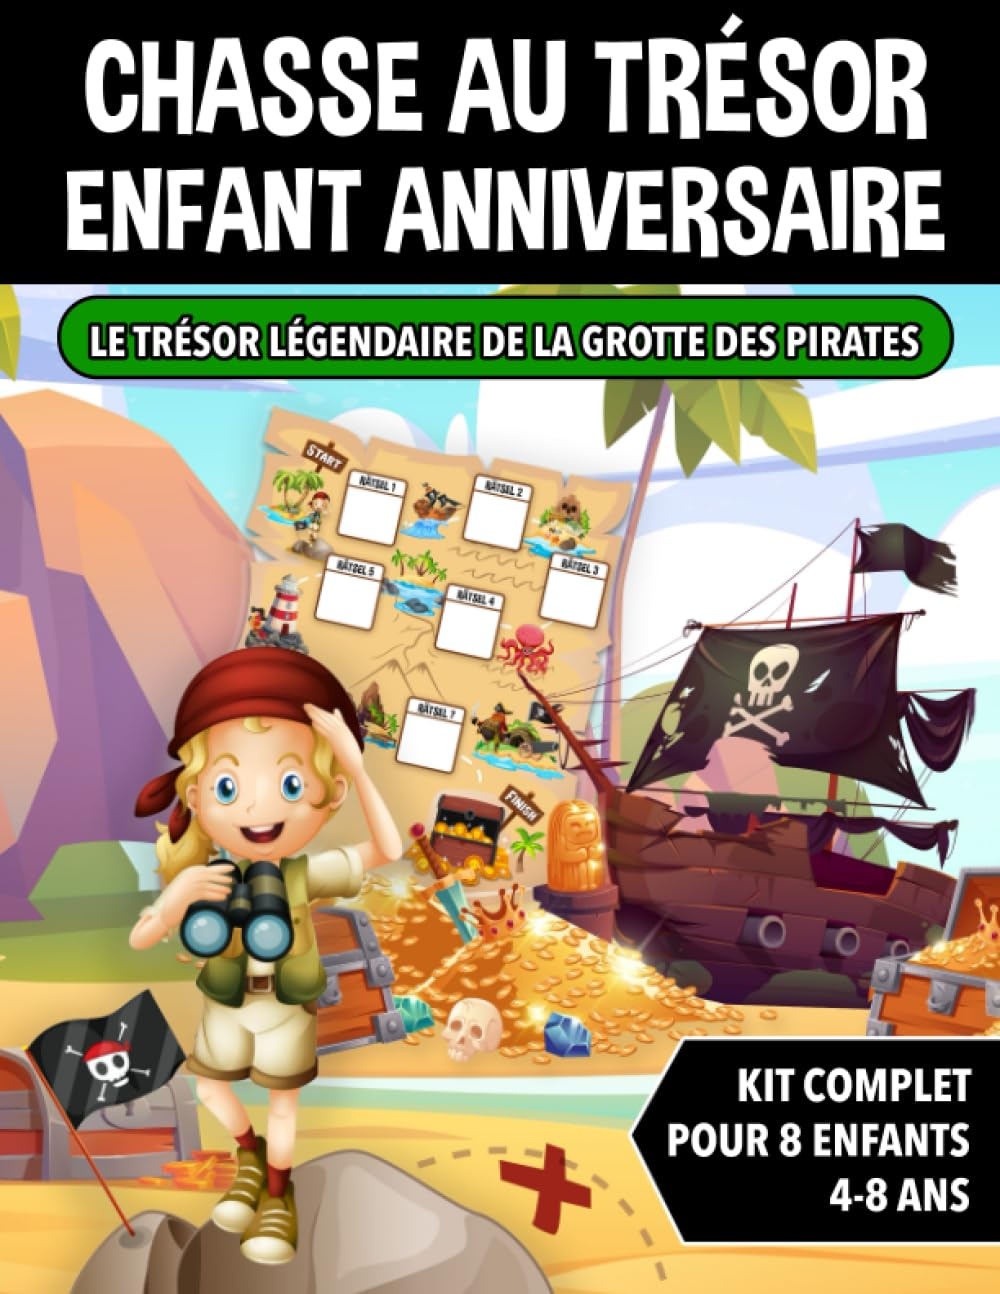 Chasse au Trésor Enfant Anniversaire Pirates: Kit Complet pour Enfants de 4 à 8 ans - Carte au Tréso